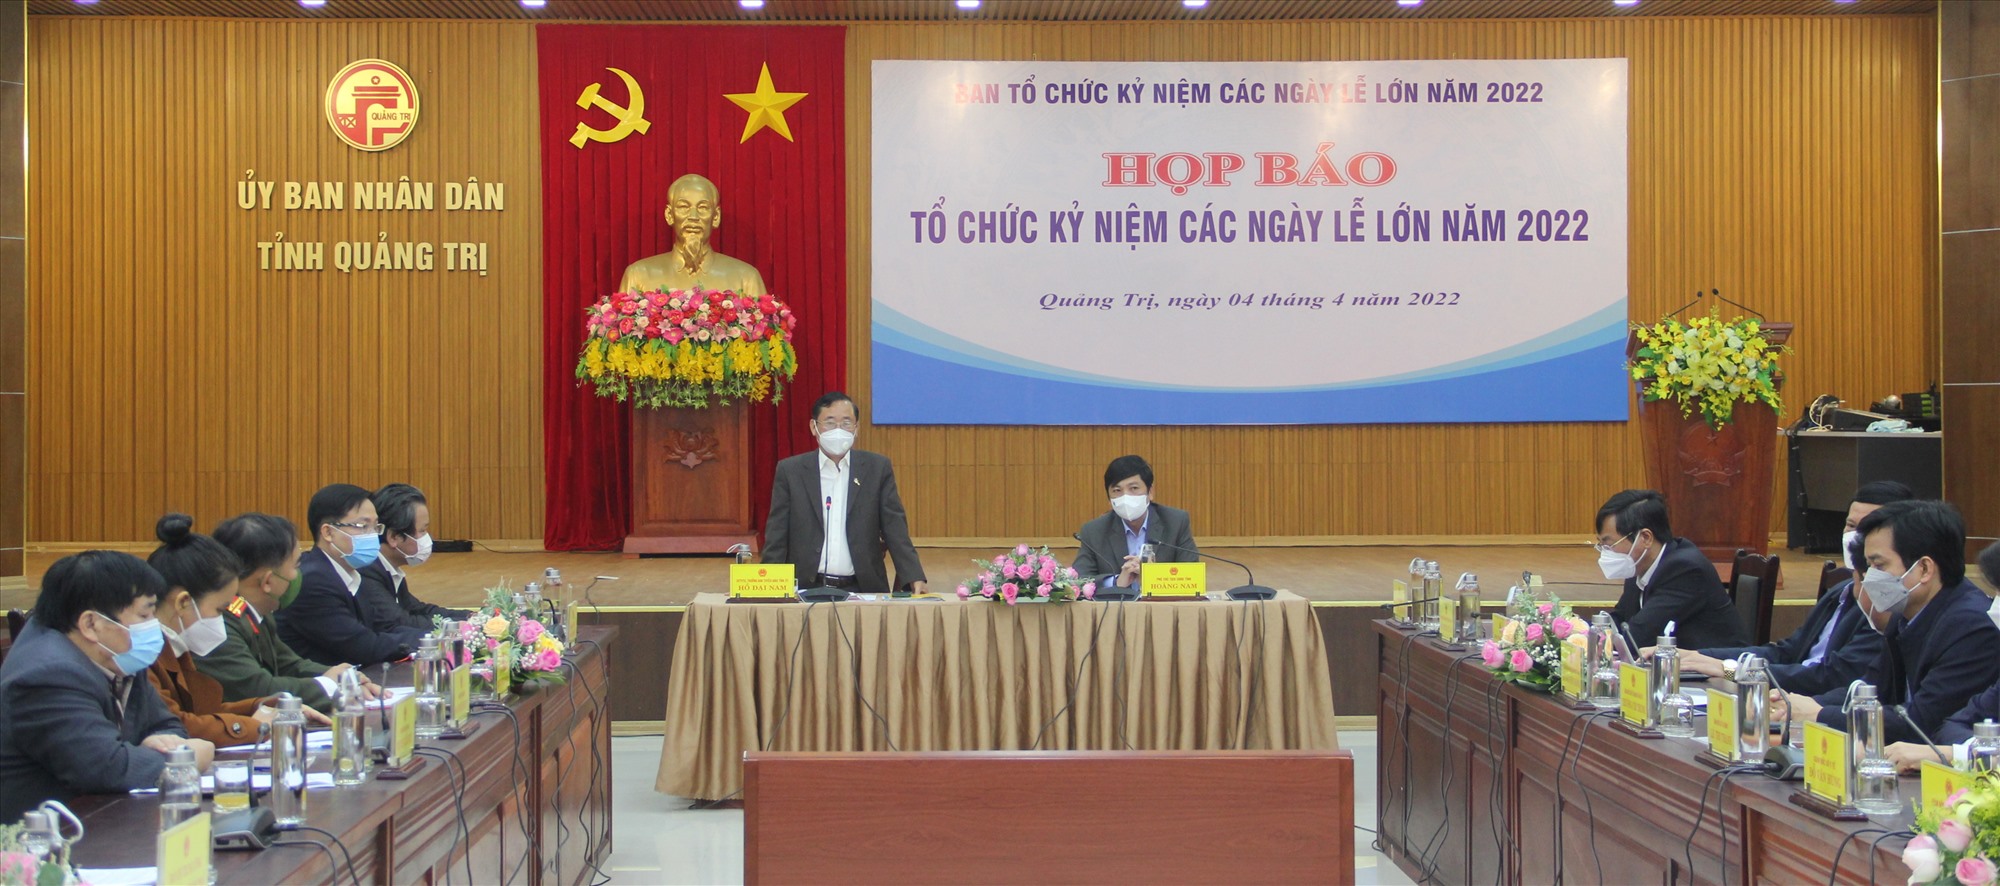 Trưởng Ban Tuyên giáo Tỉnh ủy Hồ Đại Nam phát biểu tại cuộc họp báo - Ảnh: MĐ